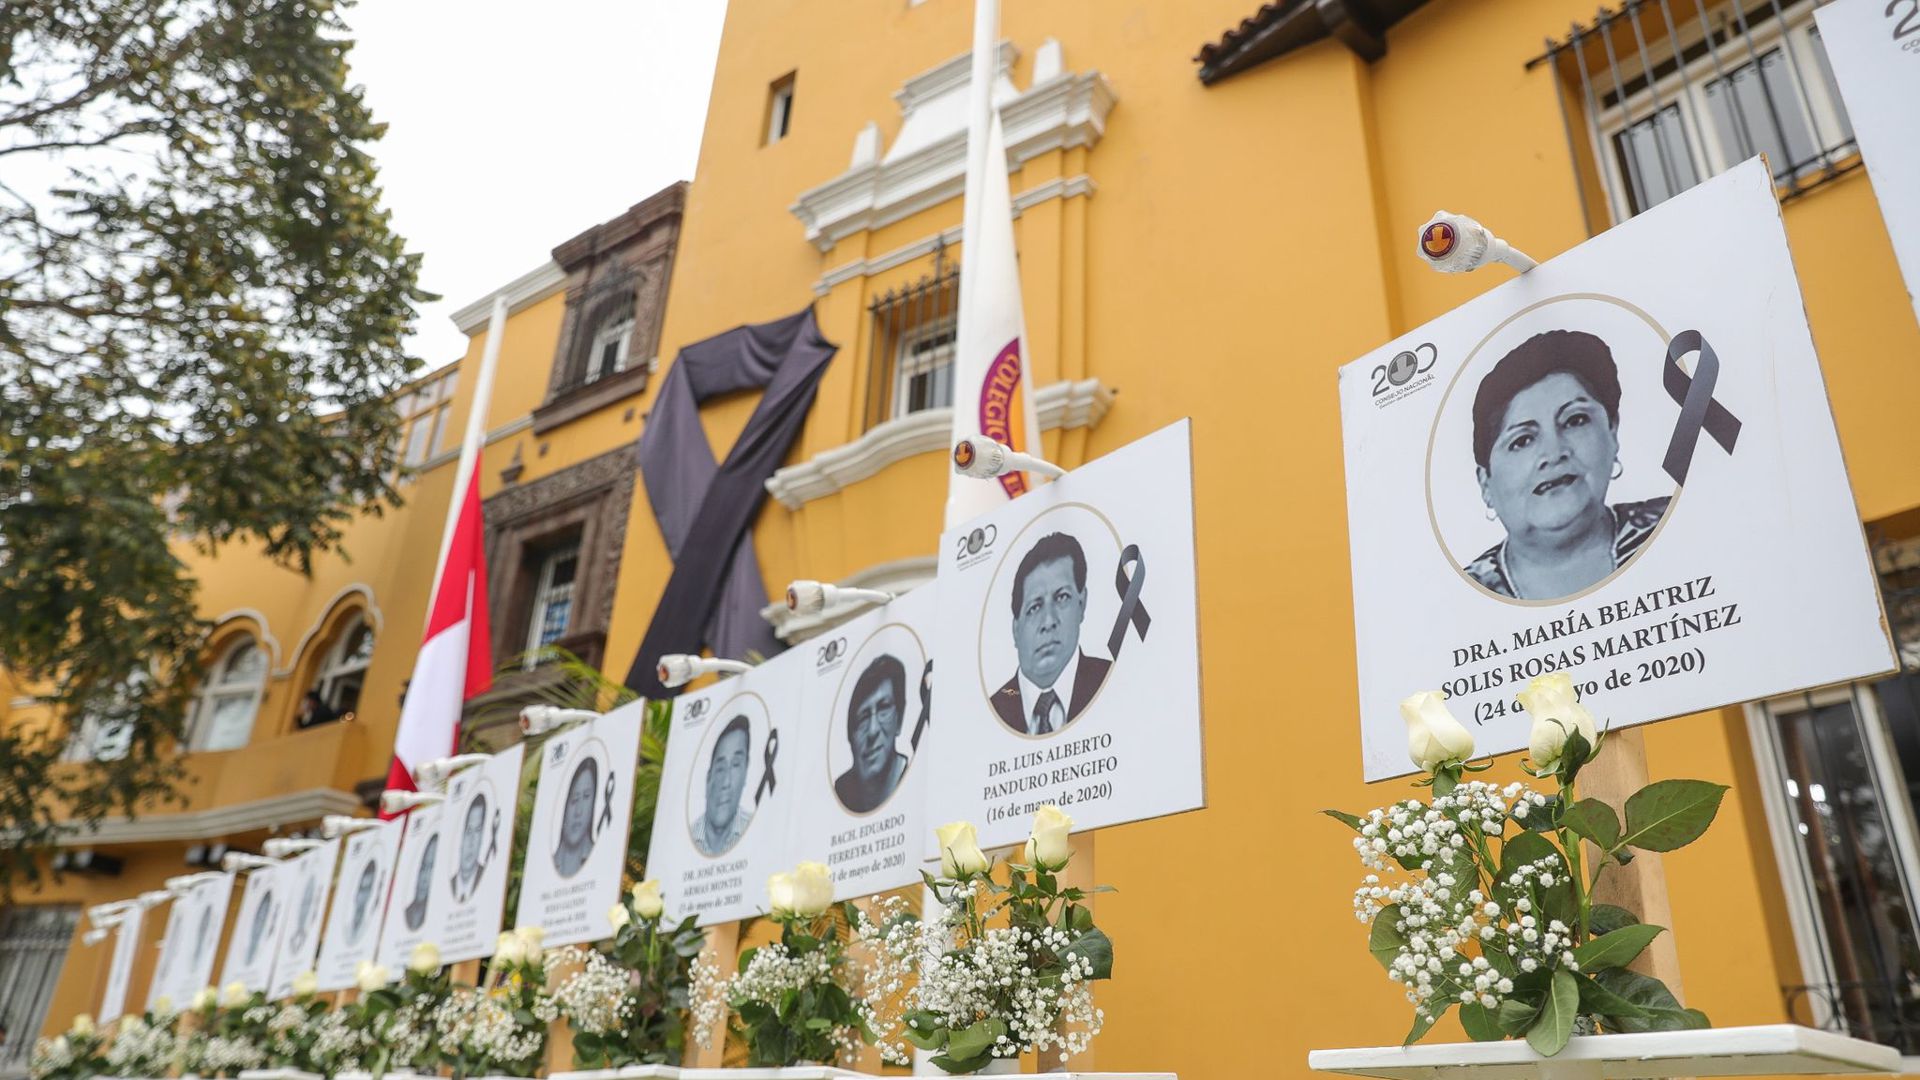 Bilder von Ärzten, die an Covid-19 gestorben sind, sind in der peruanischen Hauptstadt Lima zu sehen.